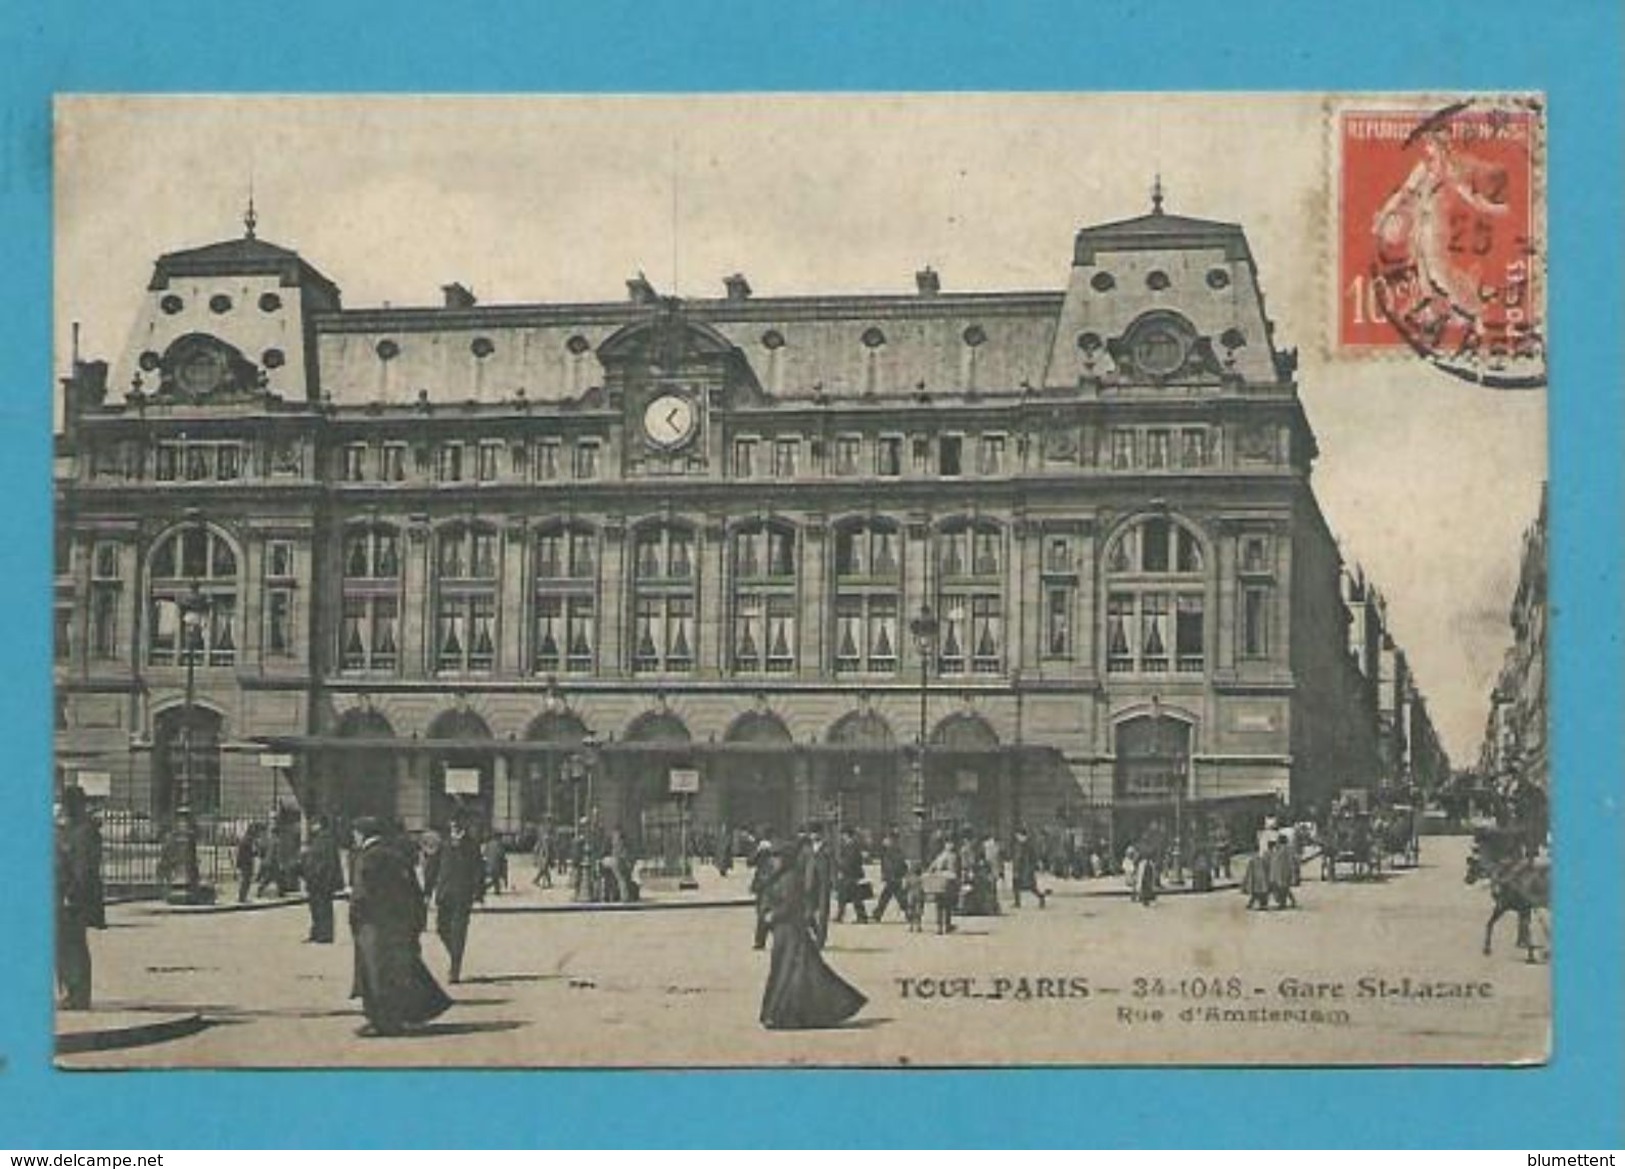 CPA TOUT PARIS 34-1048-  La Gare Saint Lazare Rue D'Amsterdam Ed.FLEURY - Metro, Stations